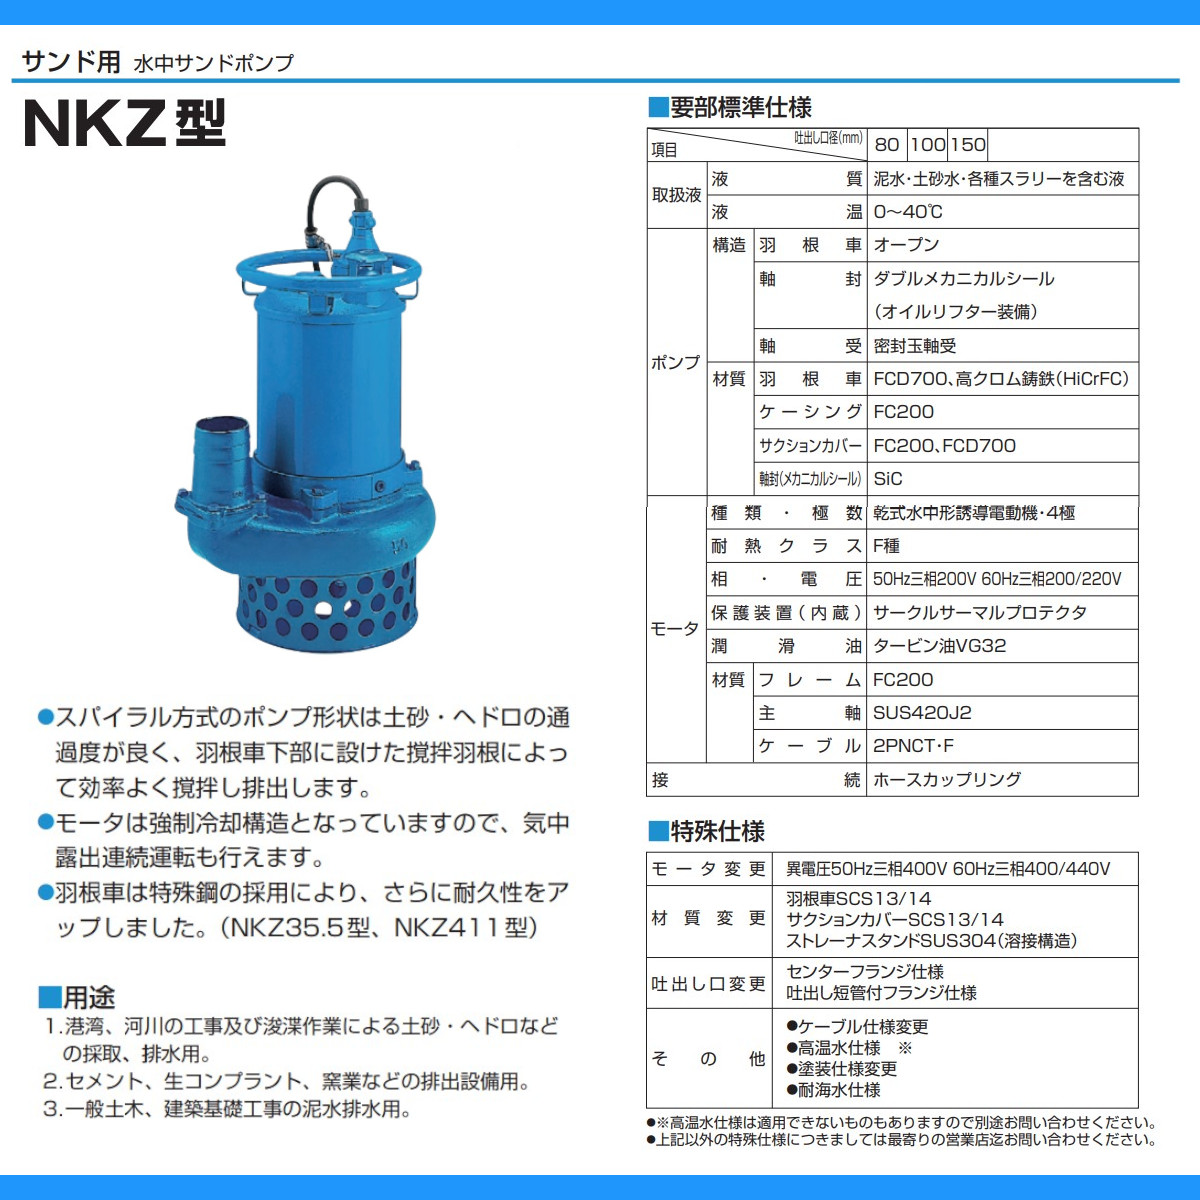 ツルミ 水中ポンプ NKZ33.7 NKZ3-D3/B3 泥水用 サンド用 80mm 50Hz